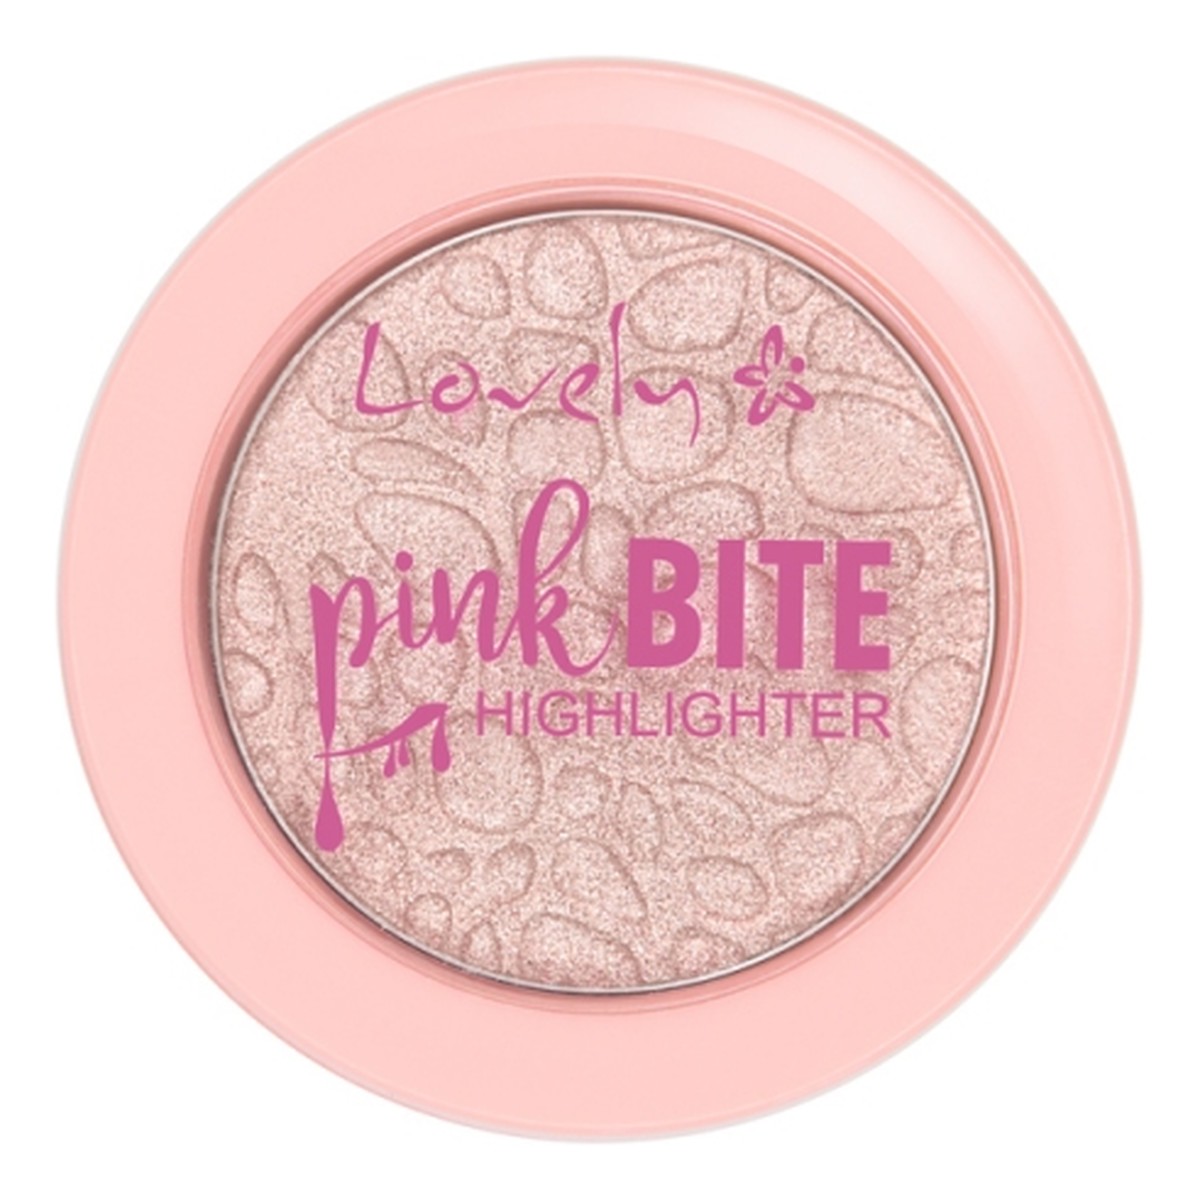 Lovely Glow Pink Bite Highlighter rozświetlacz do twarzy